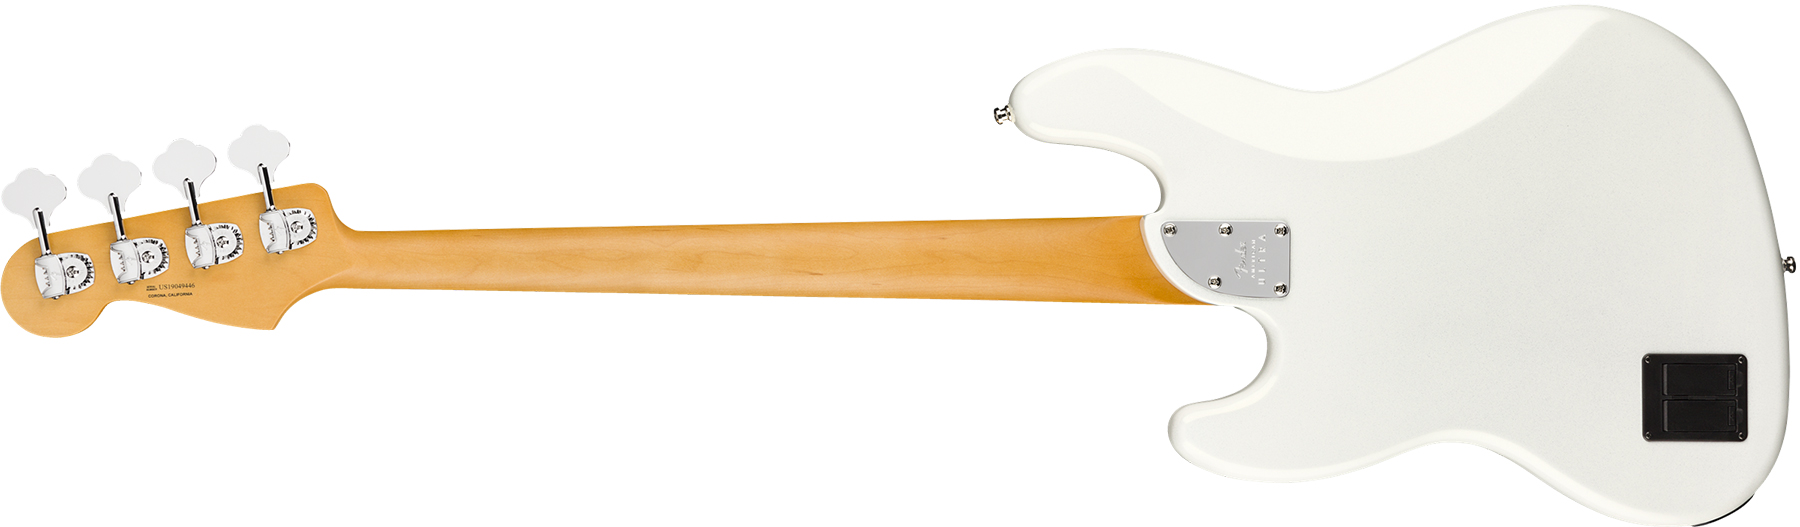 Fender Jazz Bass American Ultra 2019 Usa Rw - Arctic Pearl - Bajo eléctrico de cuerpo sólido - Variation 1